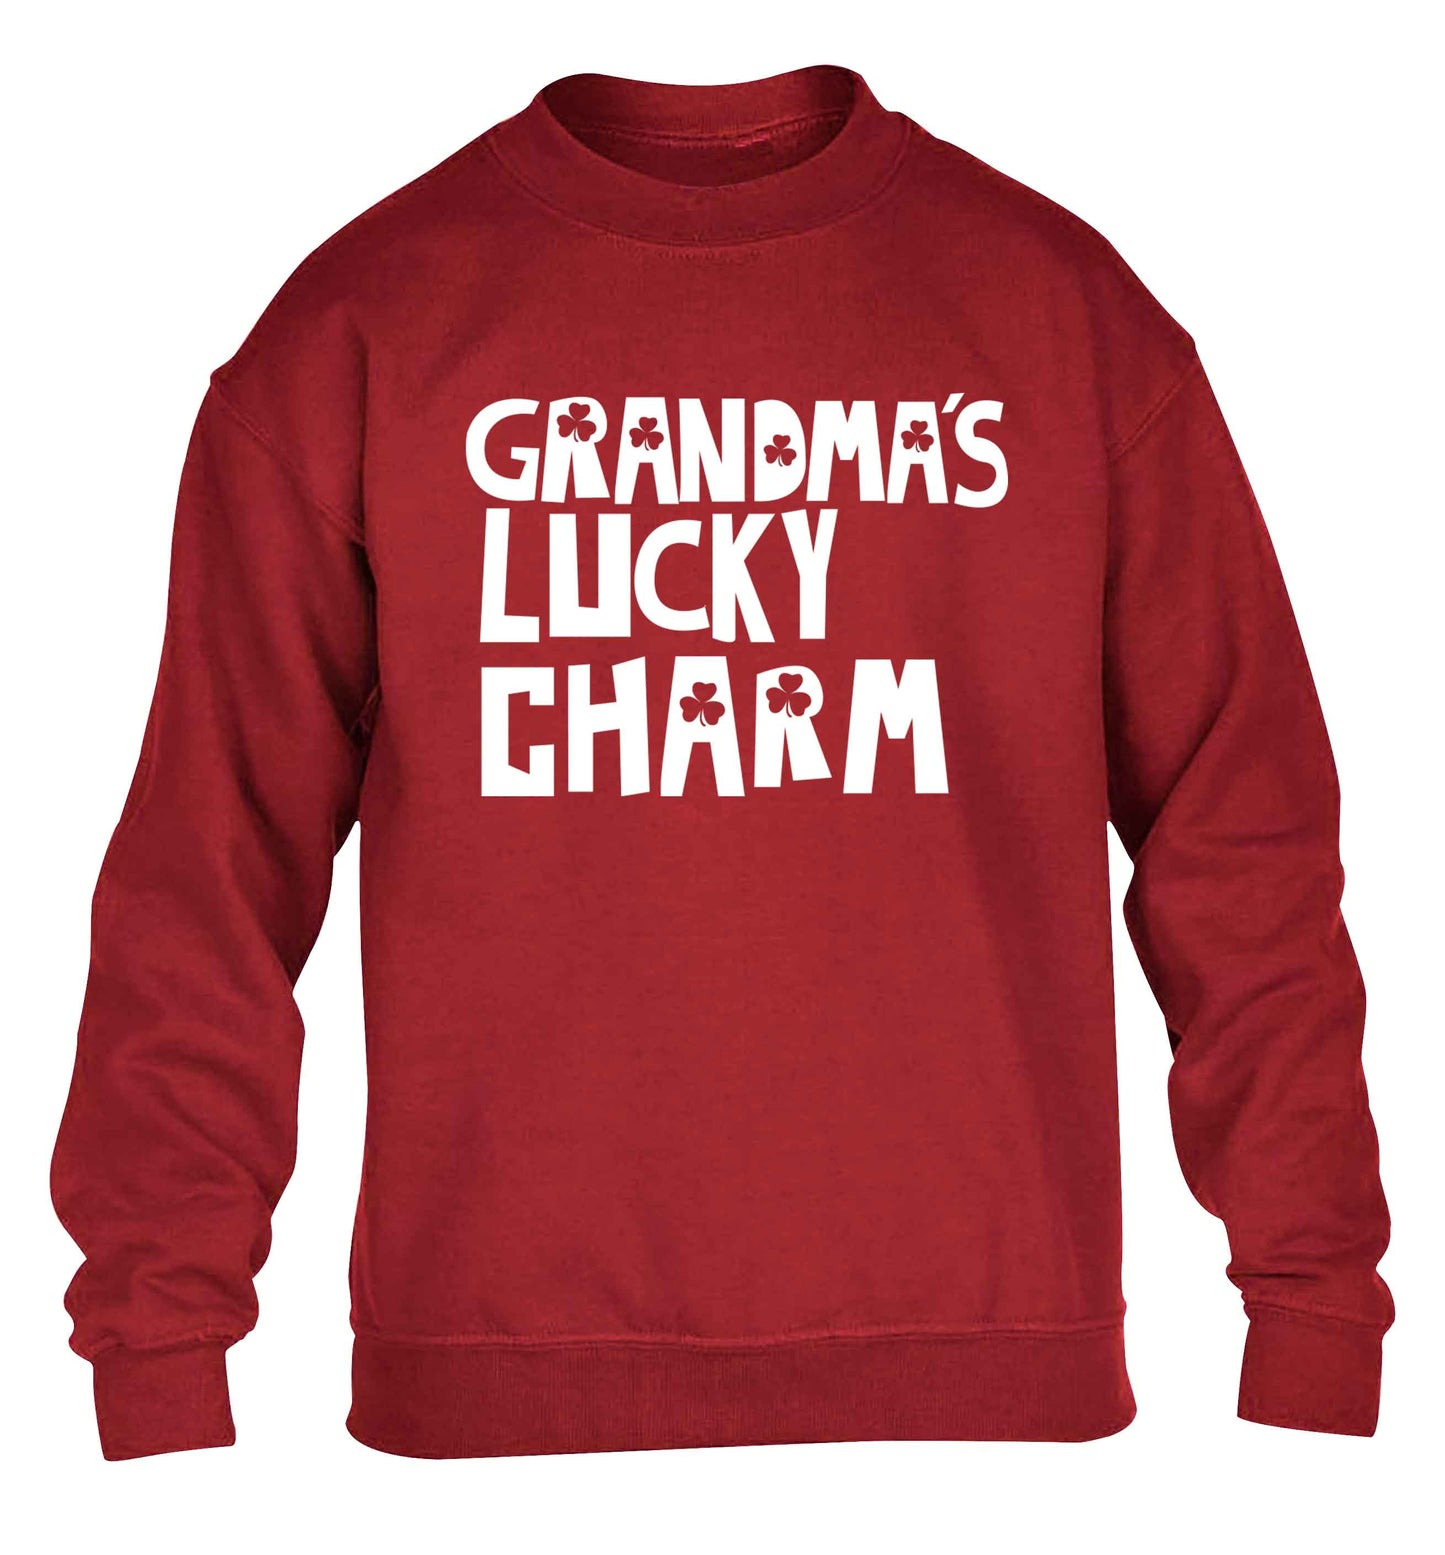 Grandma's lucky charm children's grey sweater 12-13 Years